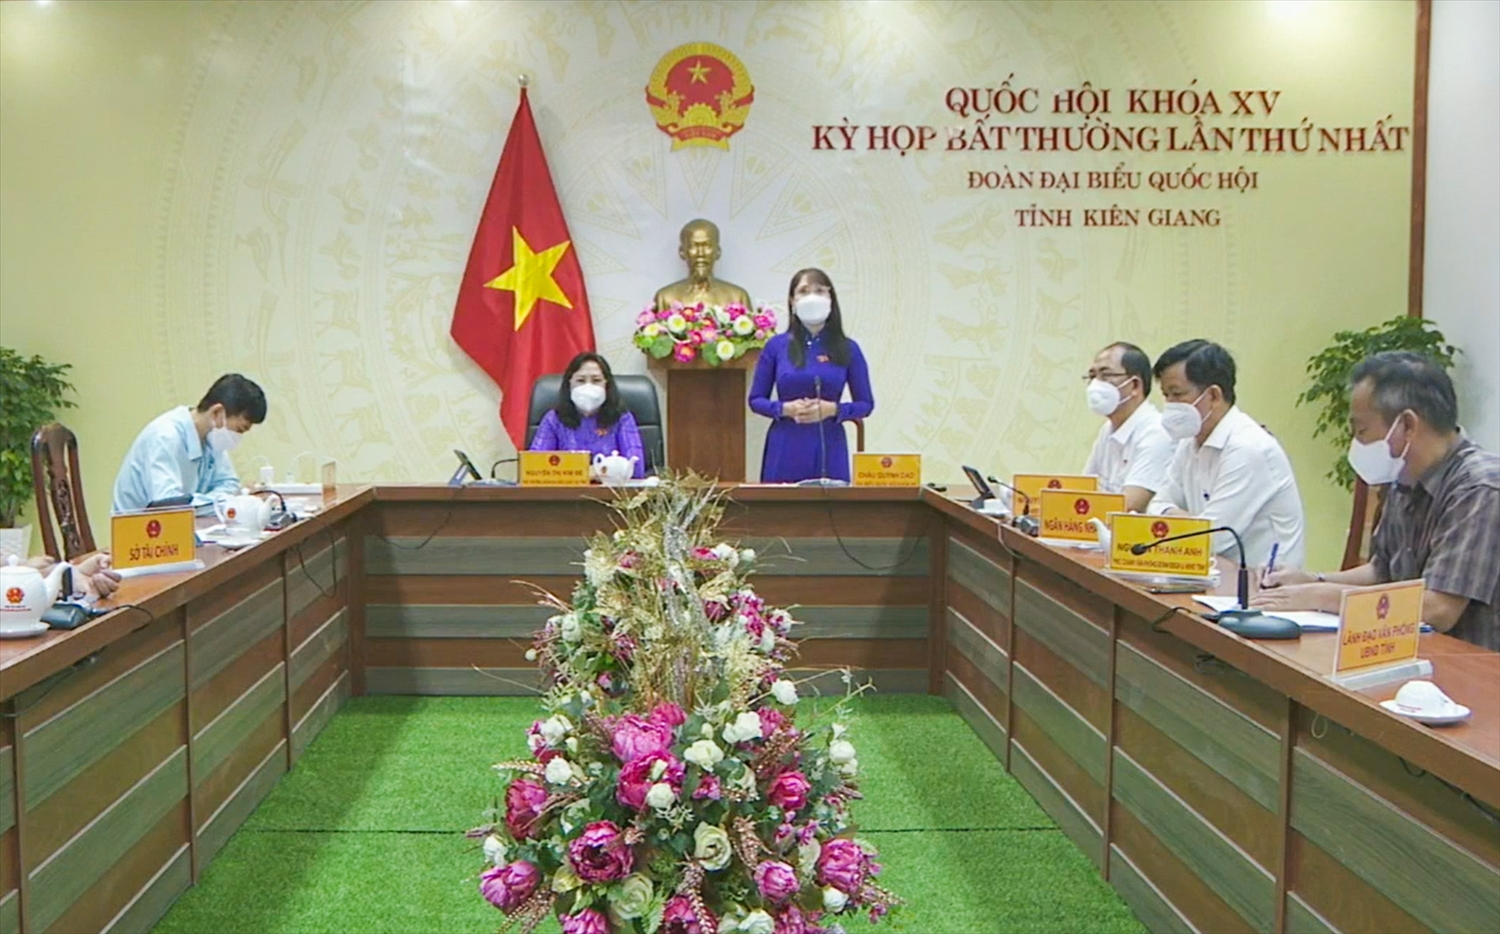 Đại biểu Châu Quỳnh Dao, Đoàn đại biểu Quốc hội tỉnh Kiên Giang phát biểu từ điểm cầu tỉnh Kiên Giang